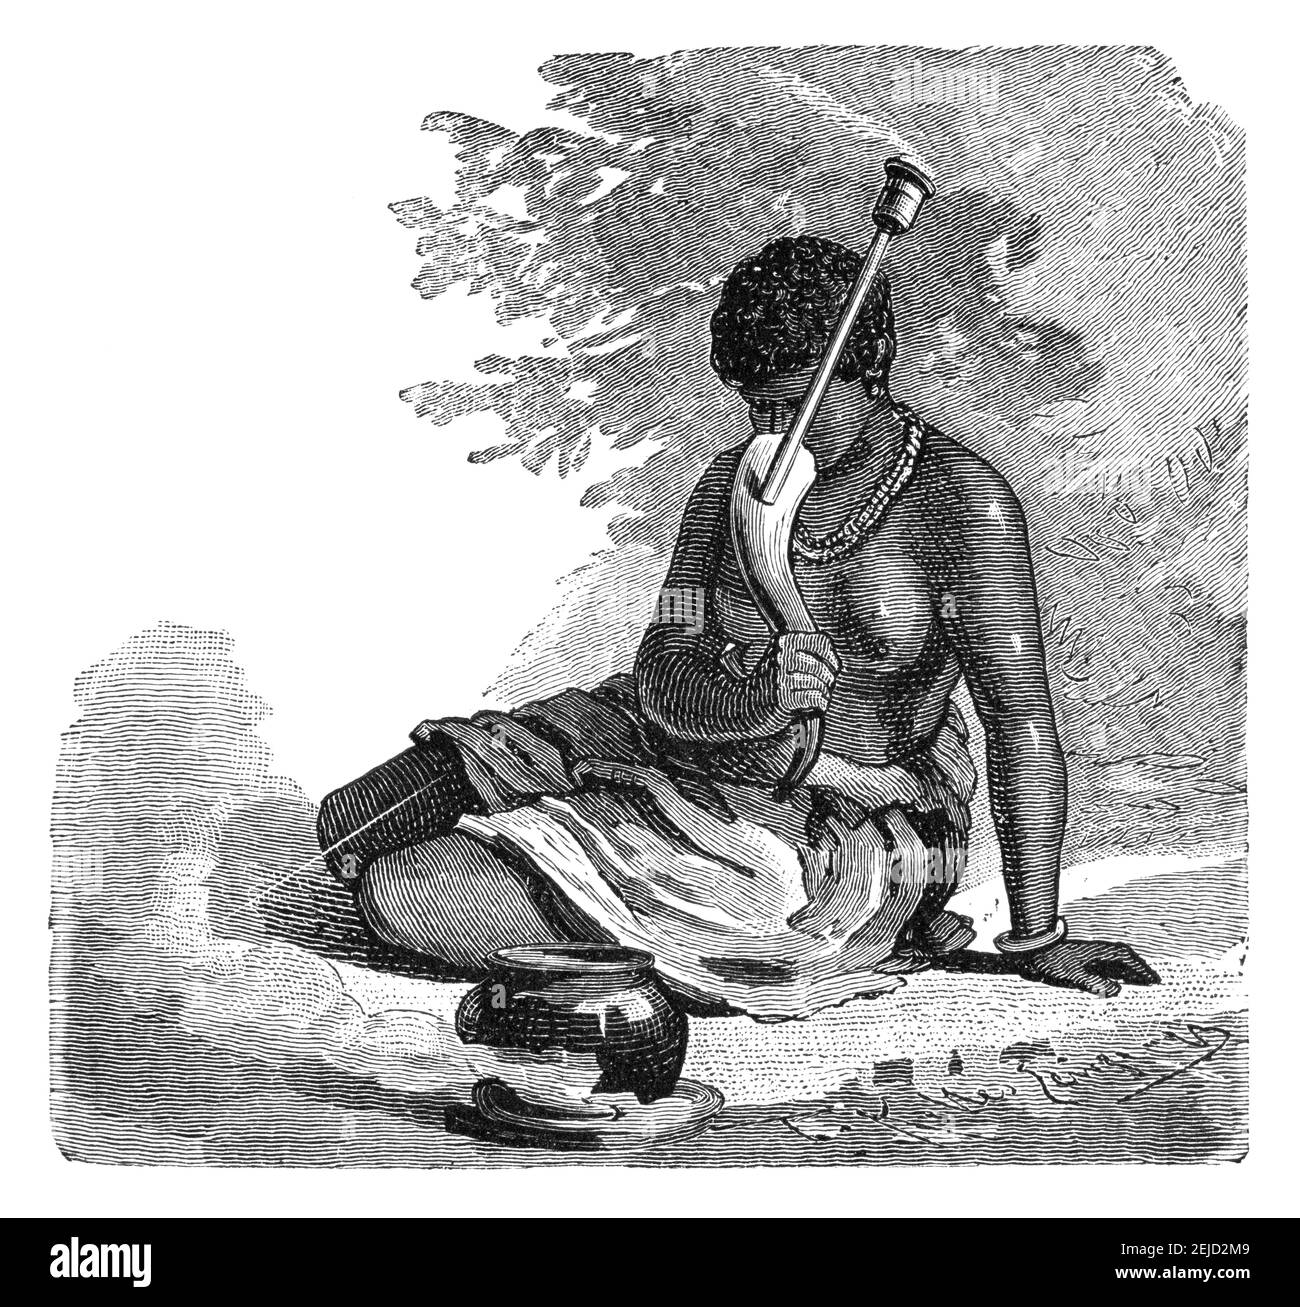 Donna africana che fuma pipe.Culture dell'acqua e storia dell'Africa. Immagine in bianco e nero d'epoca. 19 ° secolo. Foto Stock